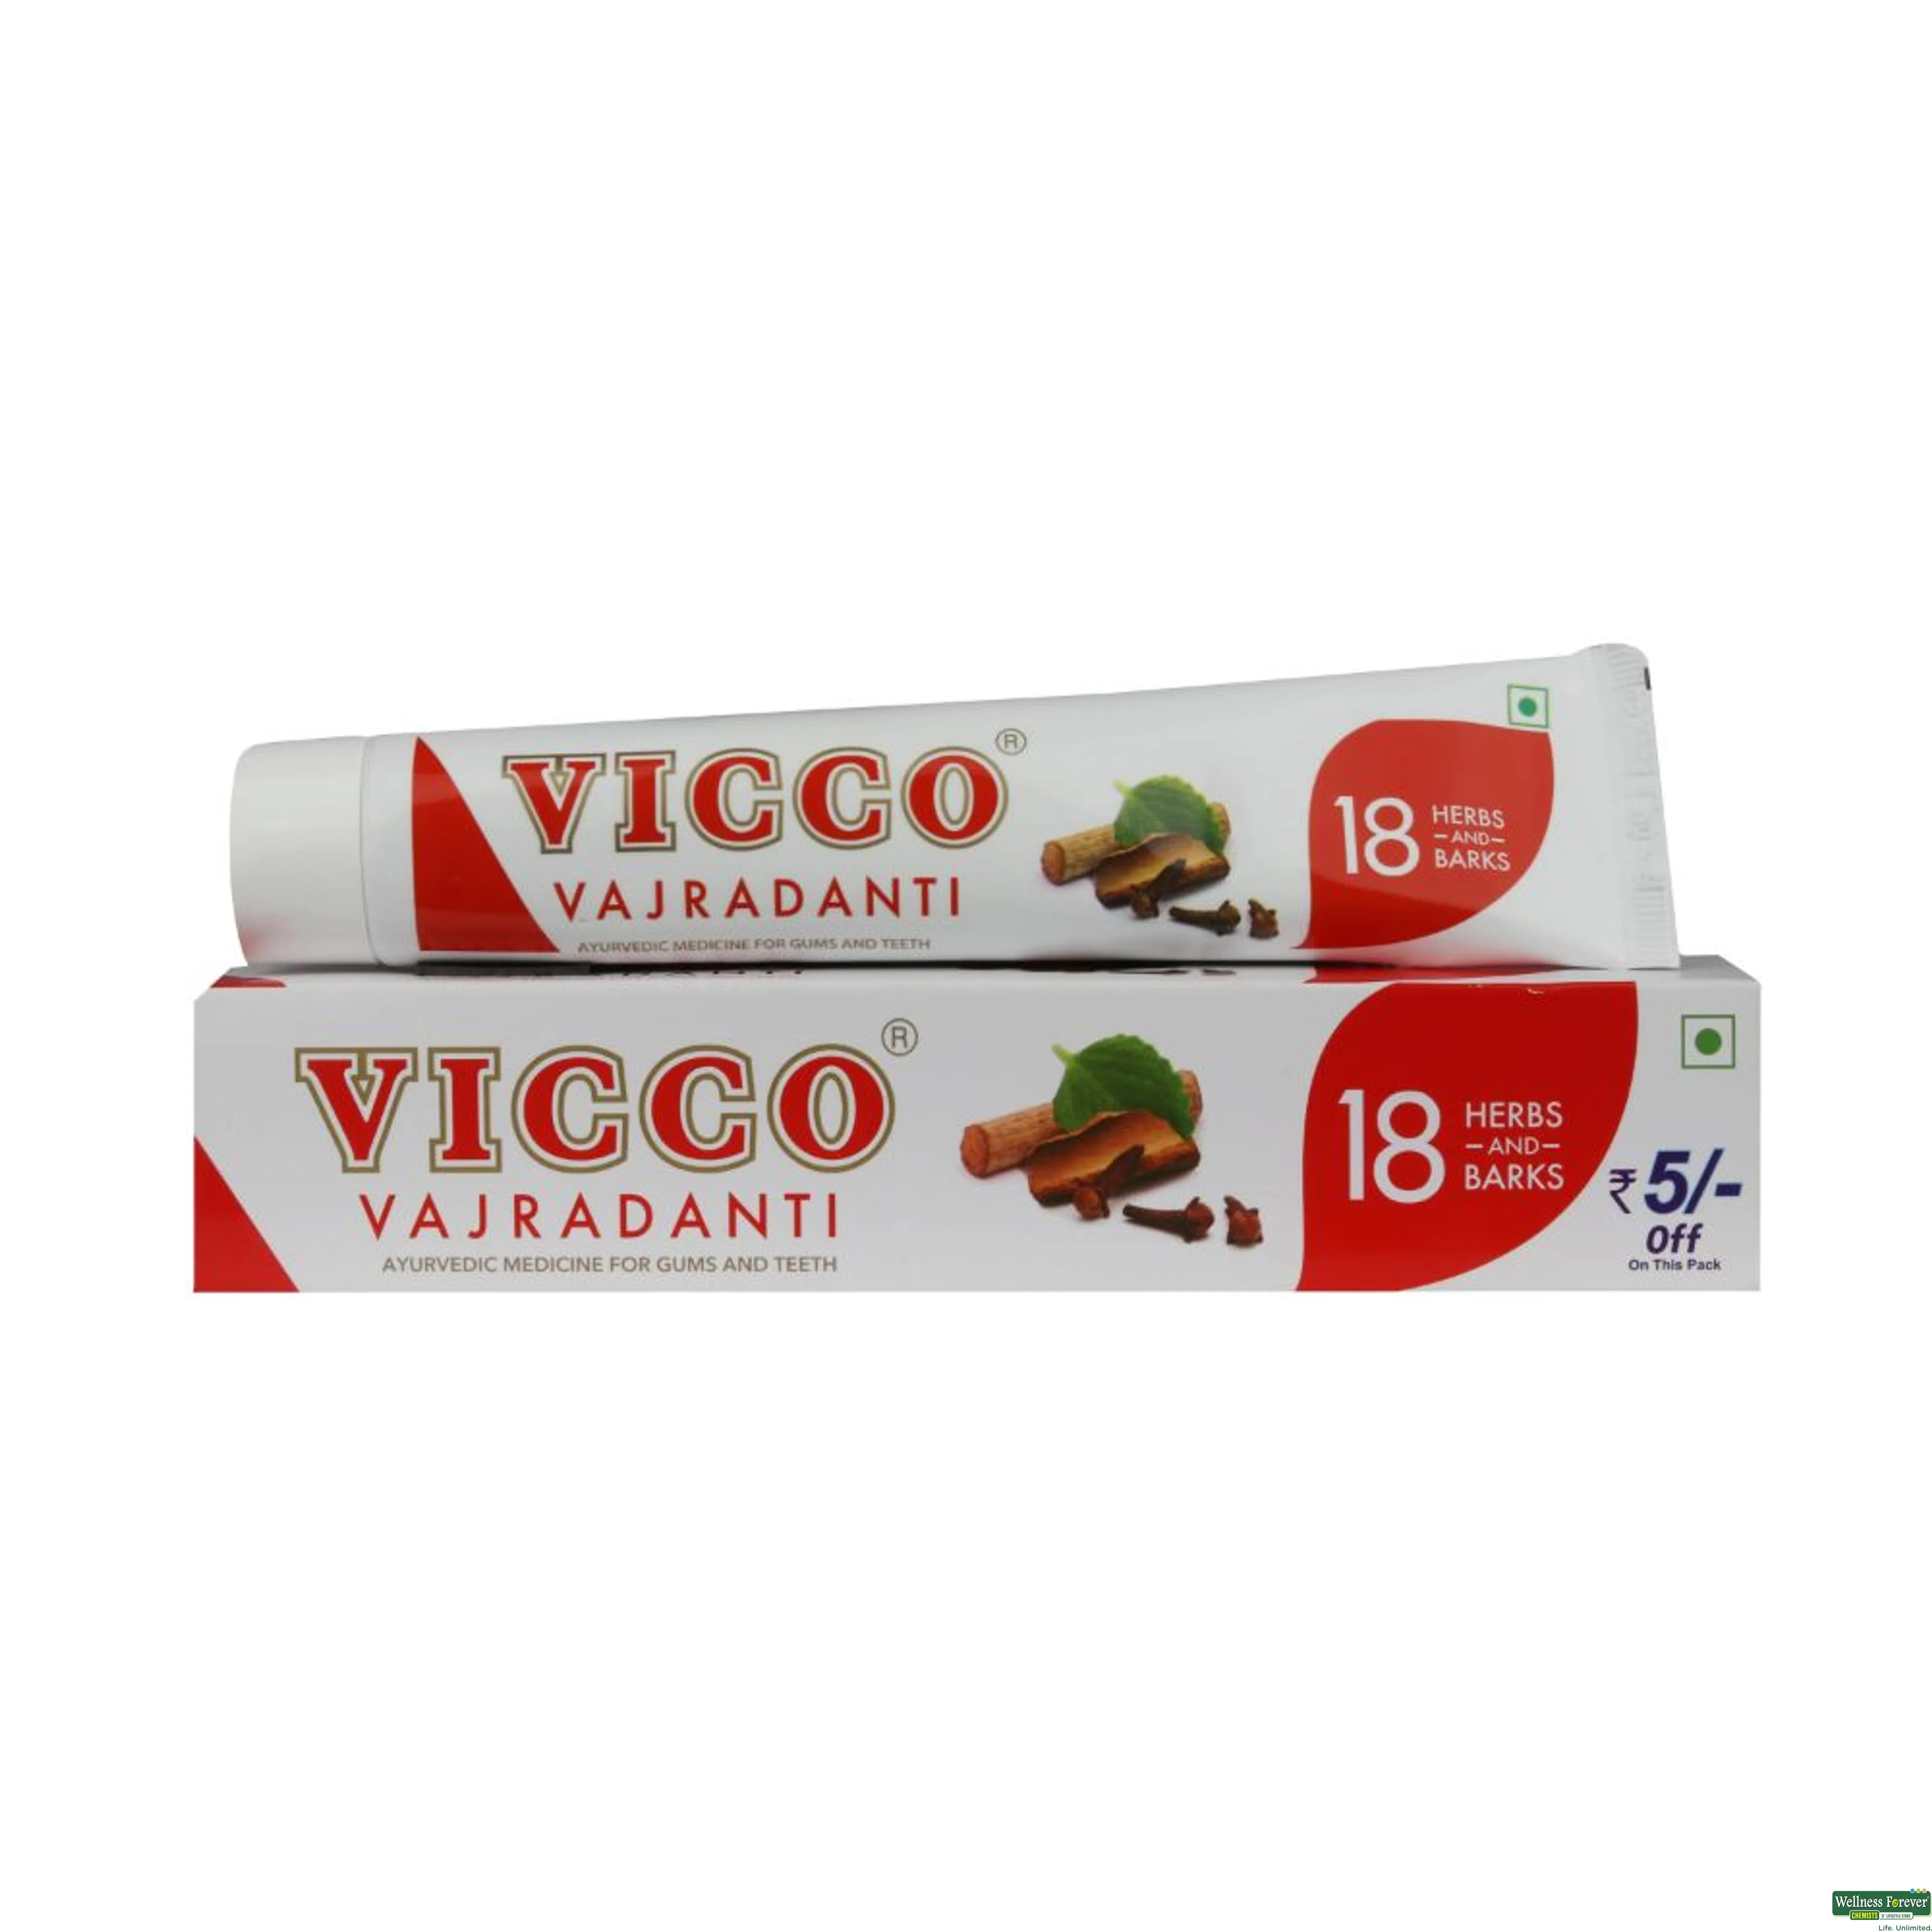 VICCO T/PASTE 100GM-image